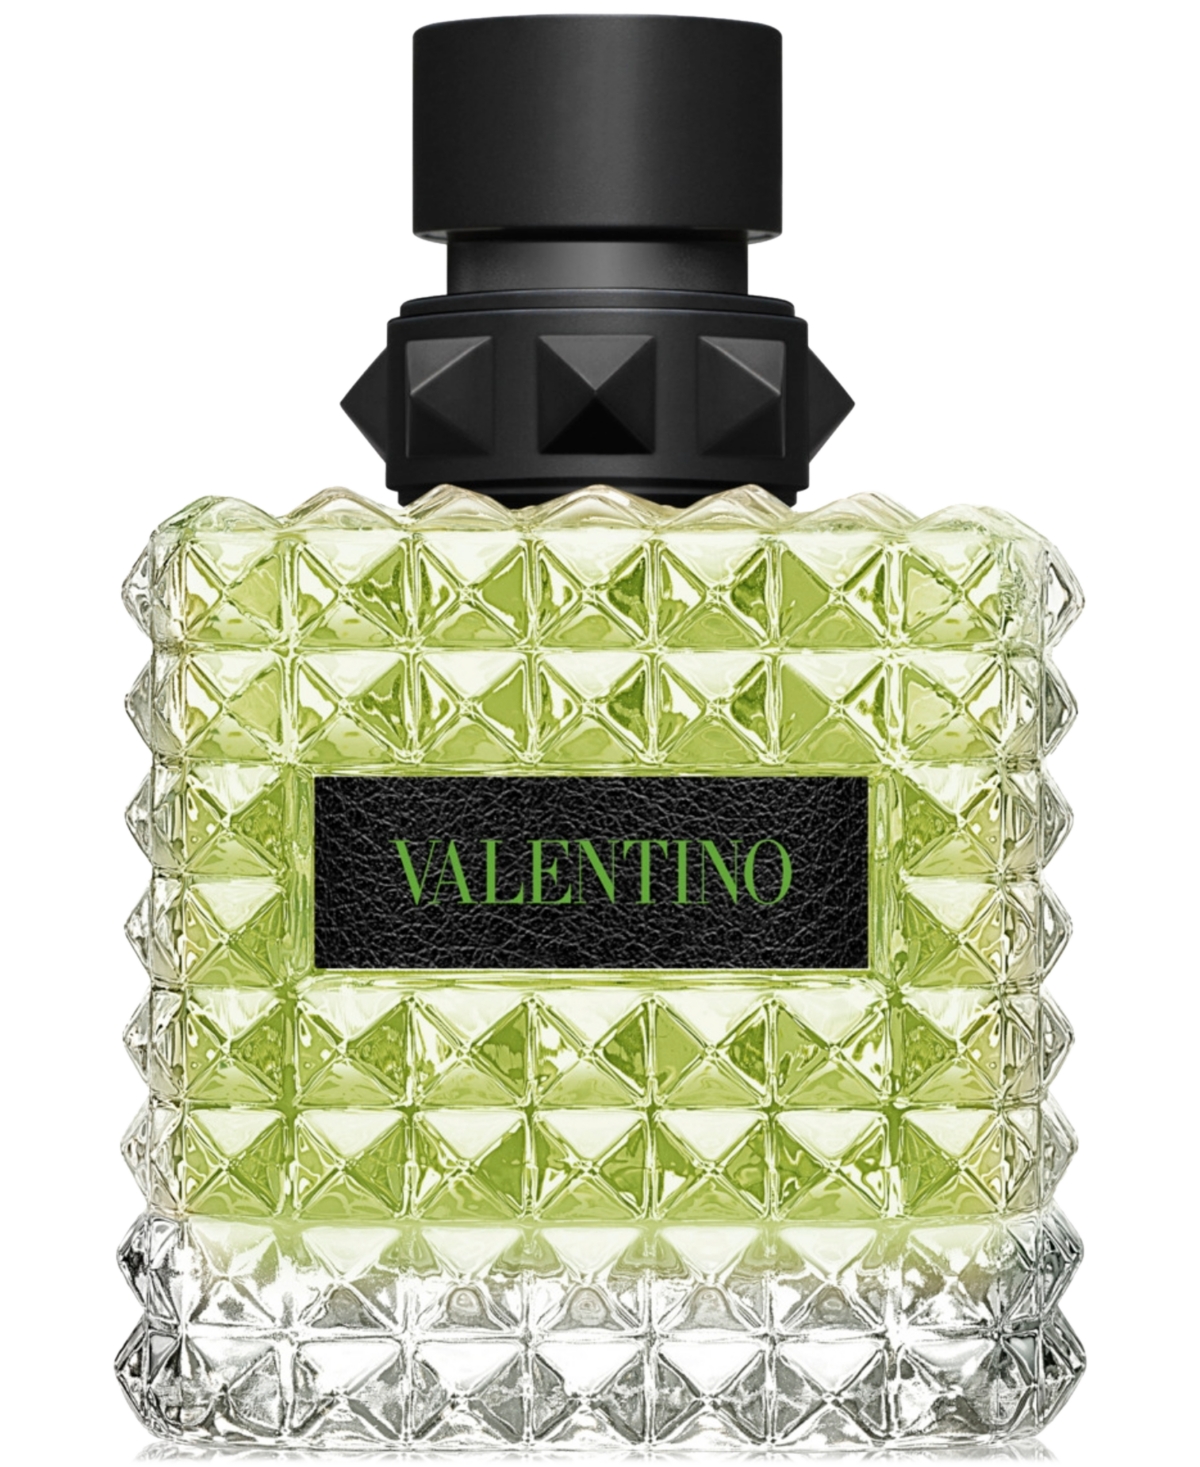 Shop Valentino Donna Born In Roma Green Stravaganza Eau De Parfum, 3.4 Oz. In No Color